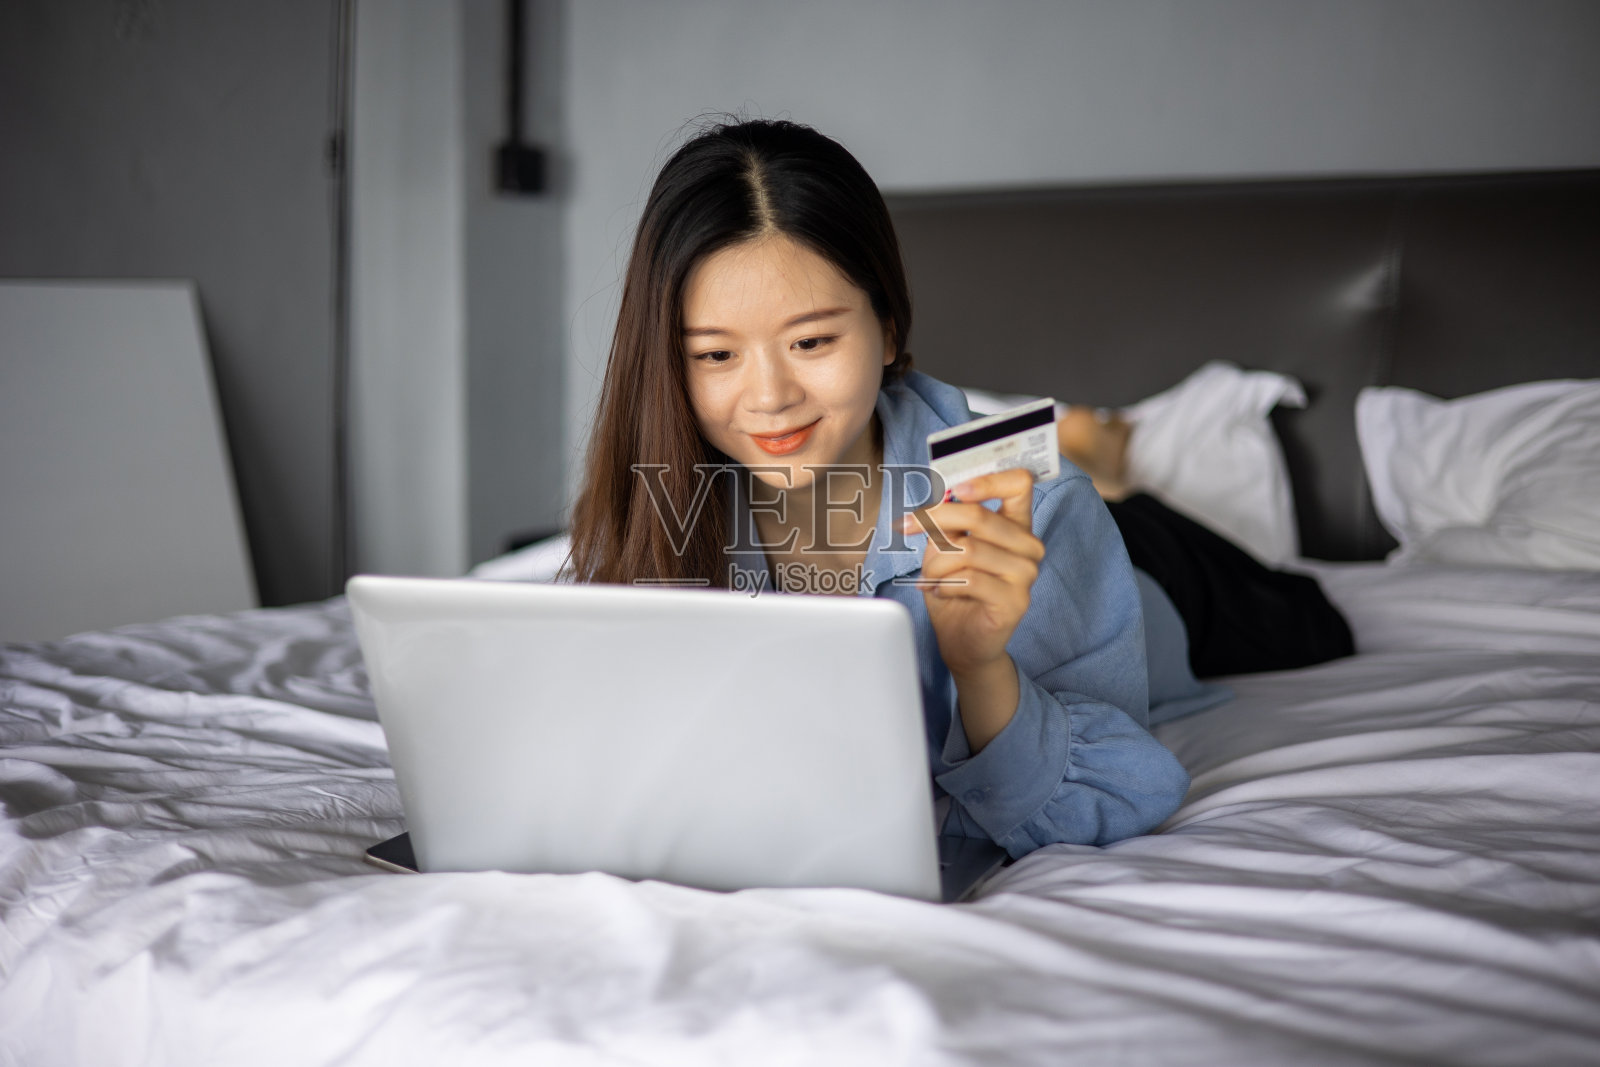 年轻女性躺在床上用笔记本电脑网购照片摄影图片